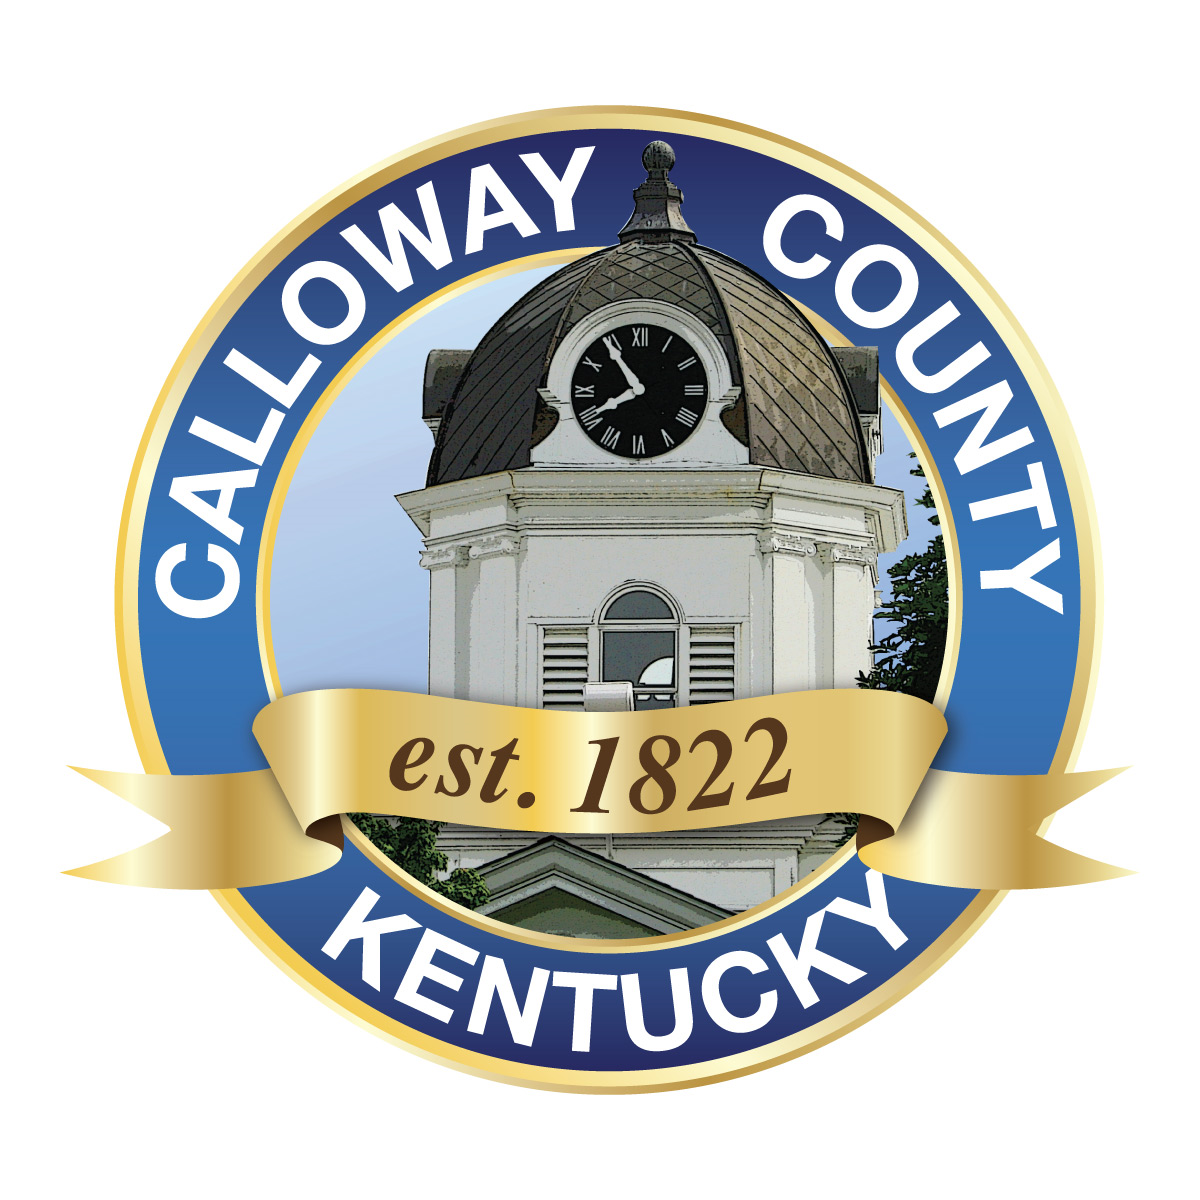 Calloway County PVA